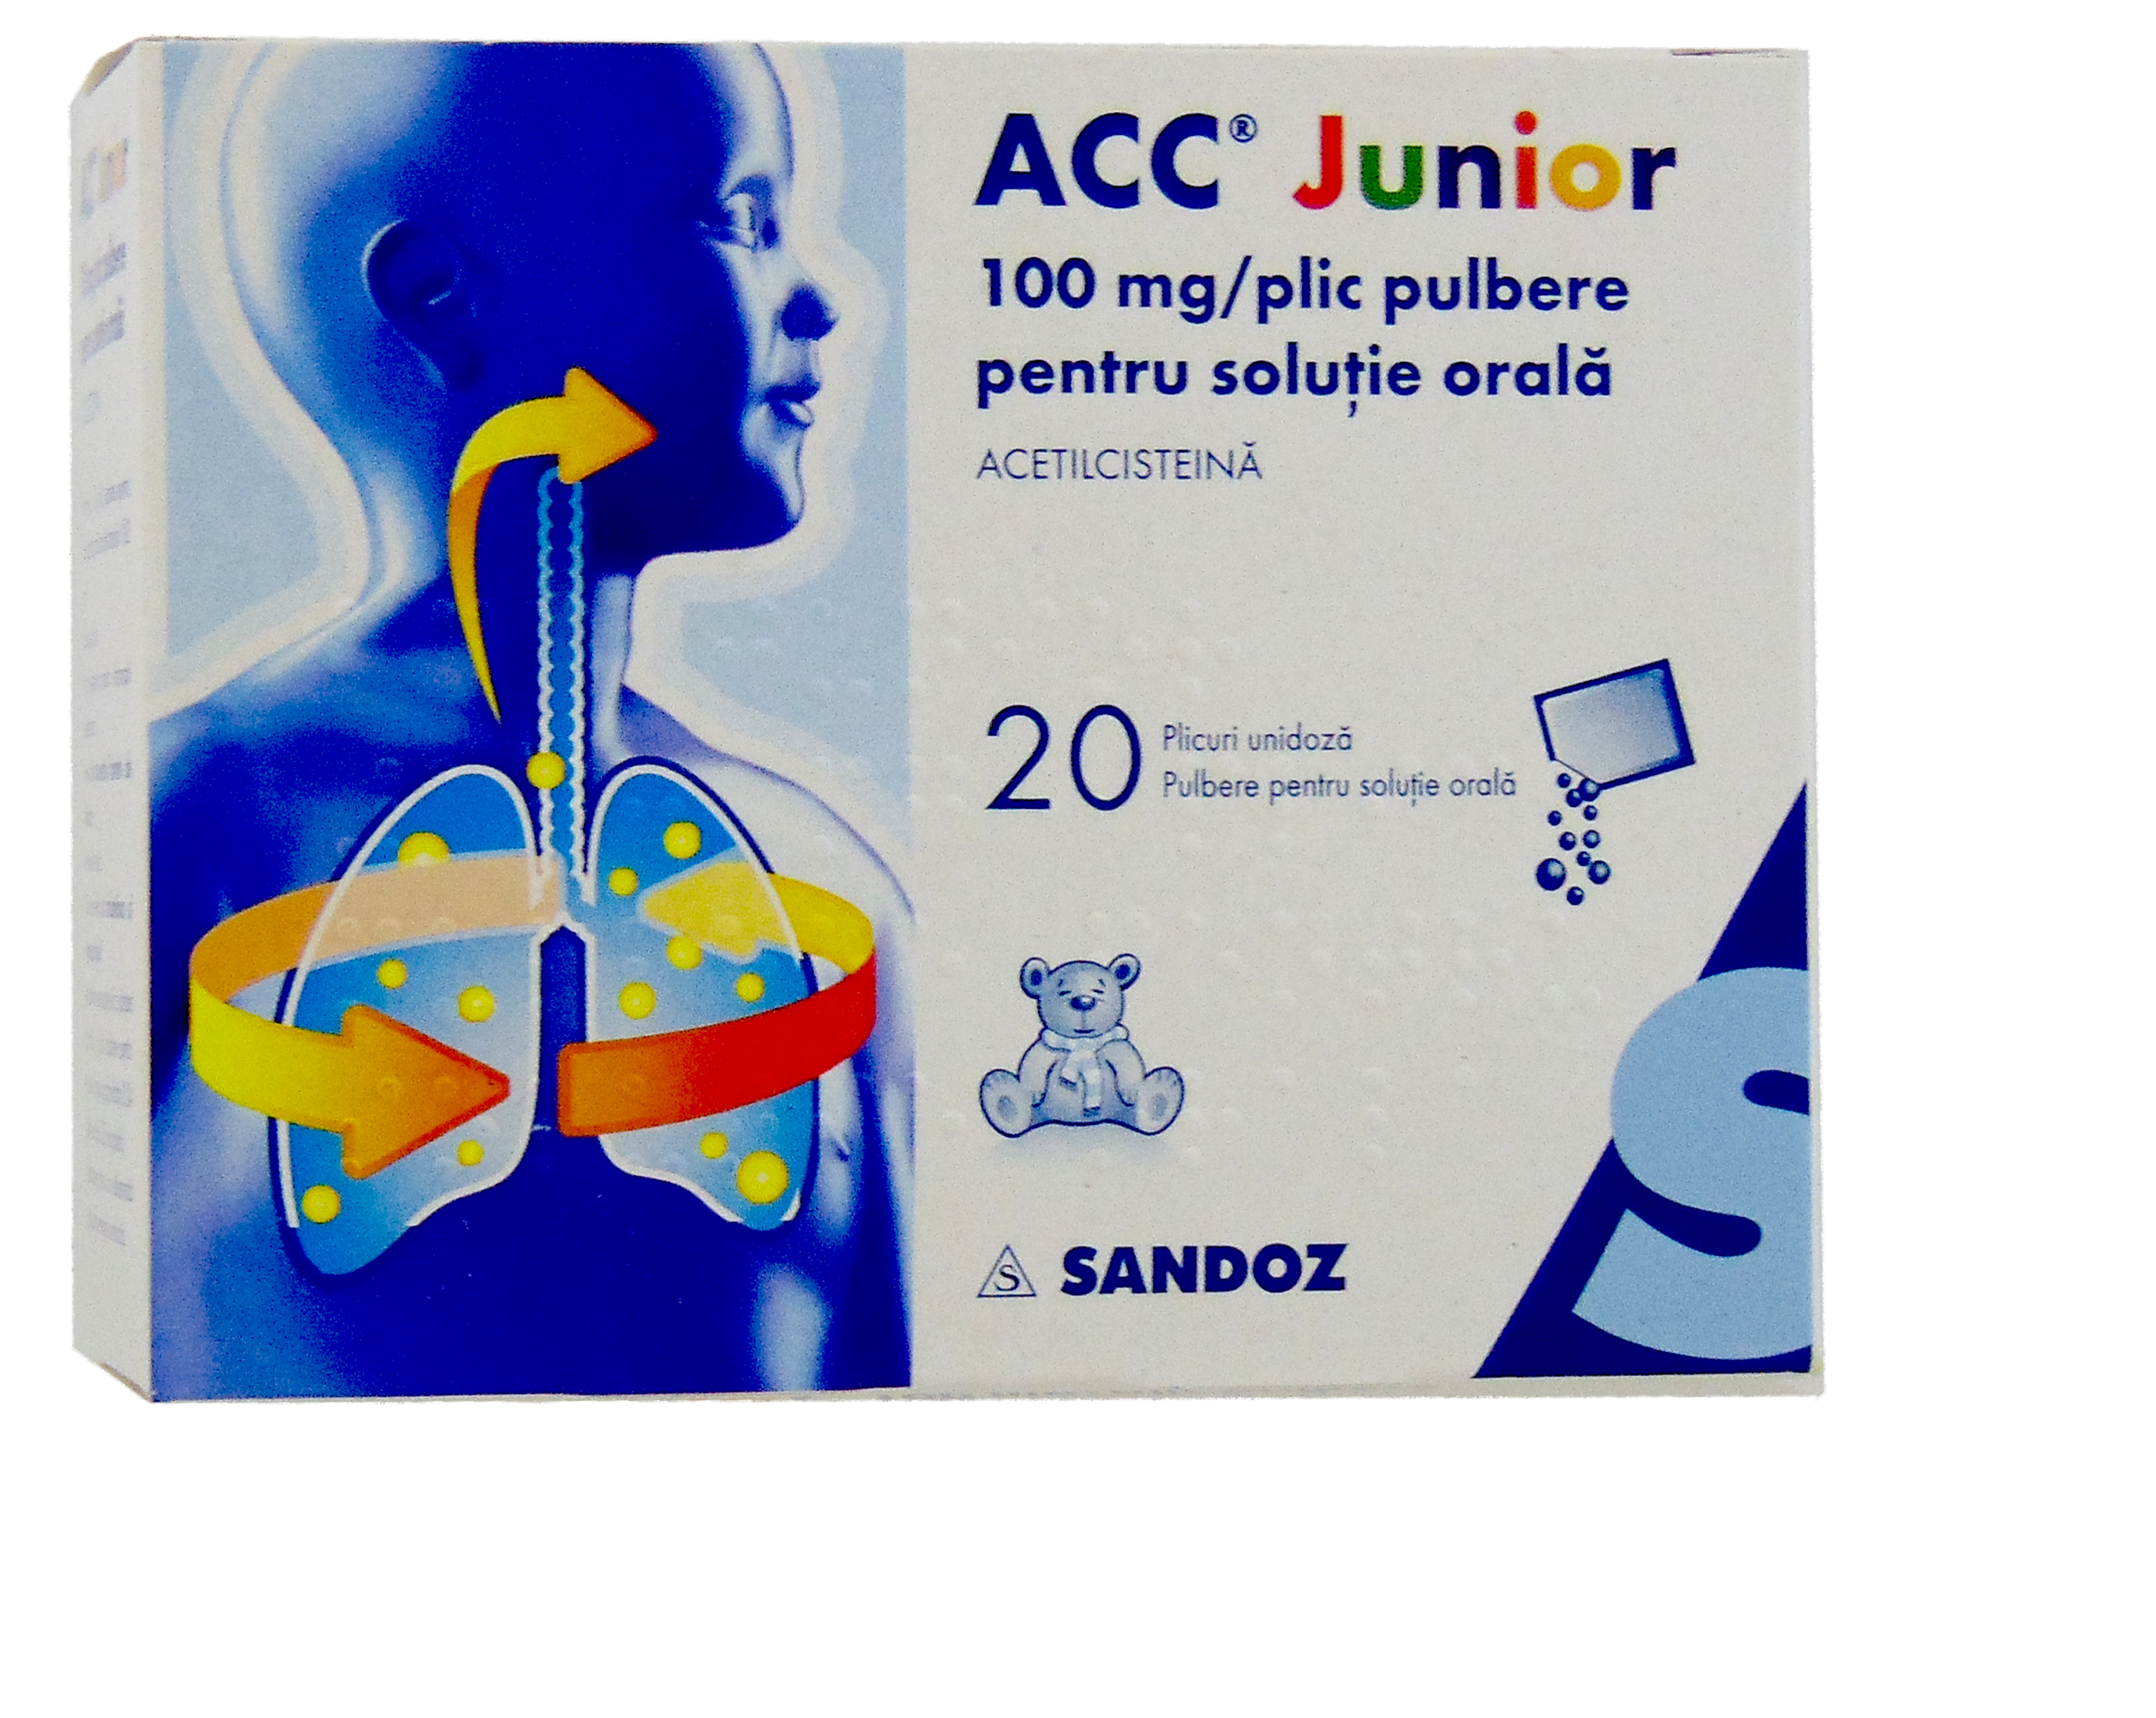 OTC - medicamente fara reteta - ACC Junior 100mg pulbere solutie orala 3 grame x 20 plicuri, medik-on.ro